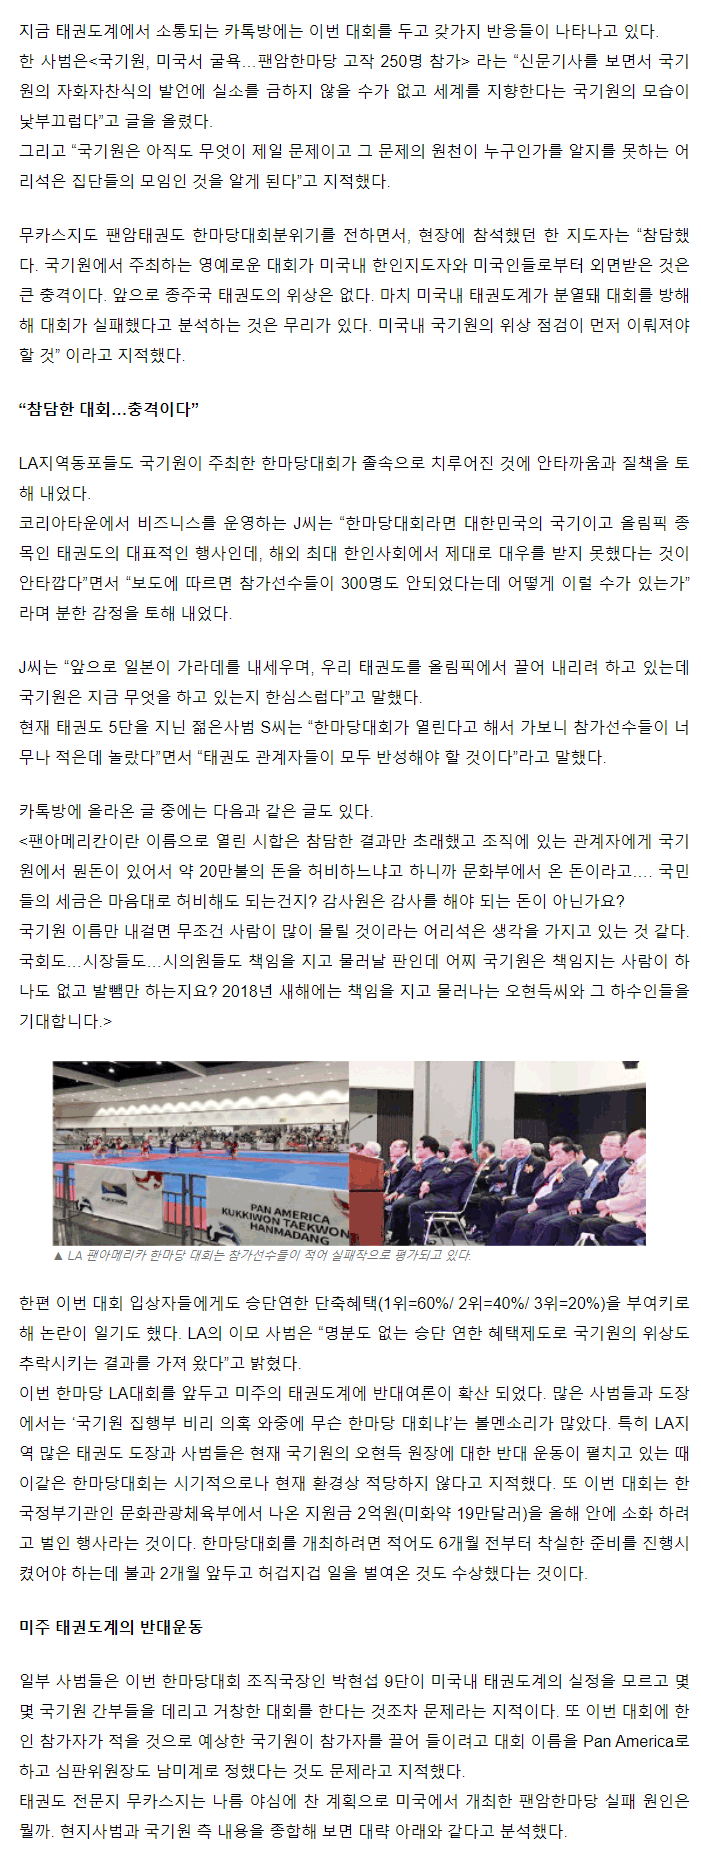 20180104_굴욕국기원주최la팬암한마당대회참패이유_sunday_02.gif